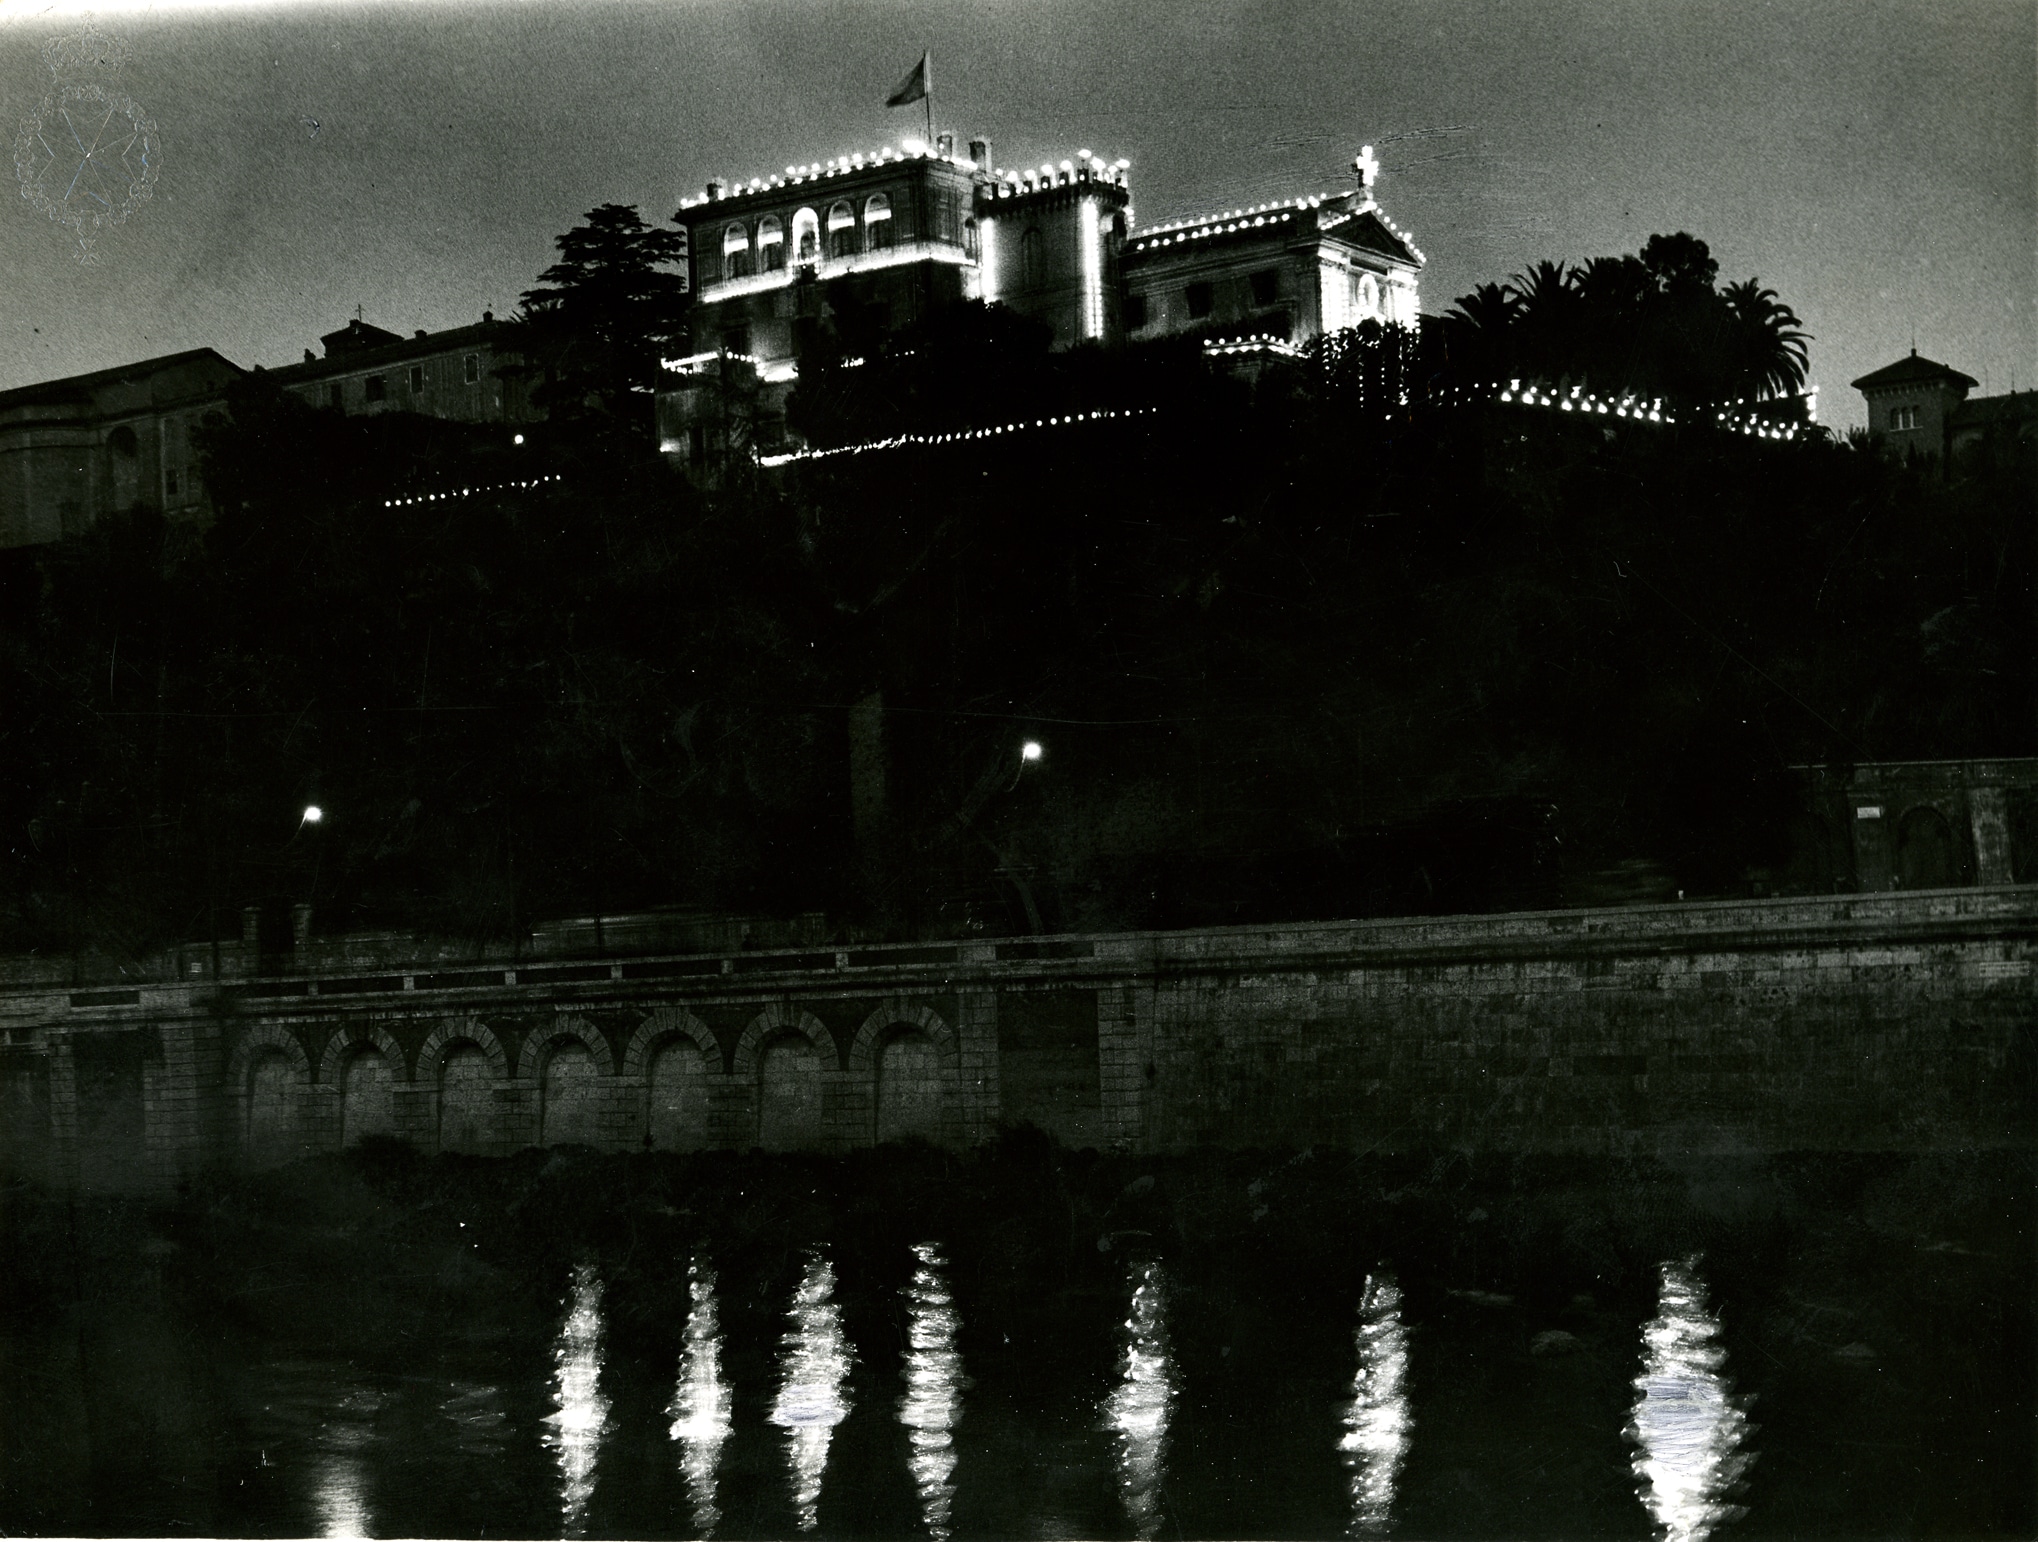 Veduta notturna di Villa Magistrale e Chiesa Santa Maria in Aventino, dalla destra del Tevere, realizzata per la festa di San Giovanni Battista, il 24 giugno del 1936